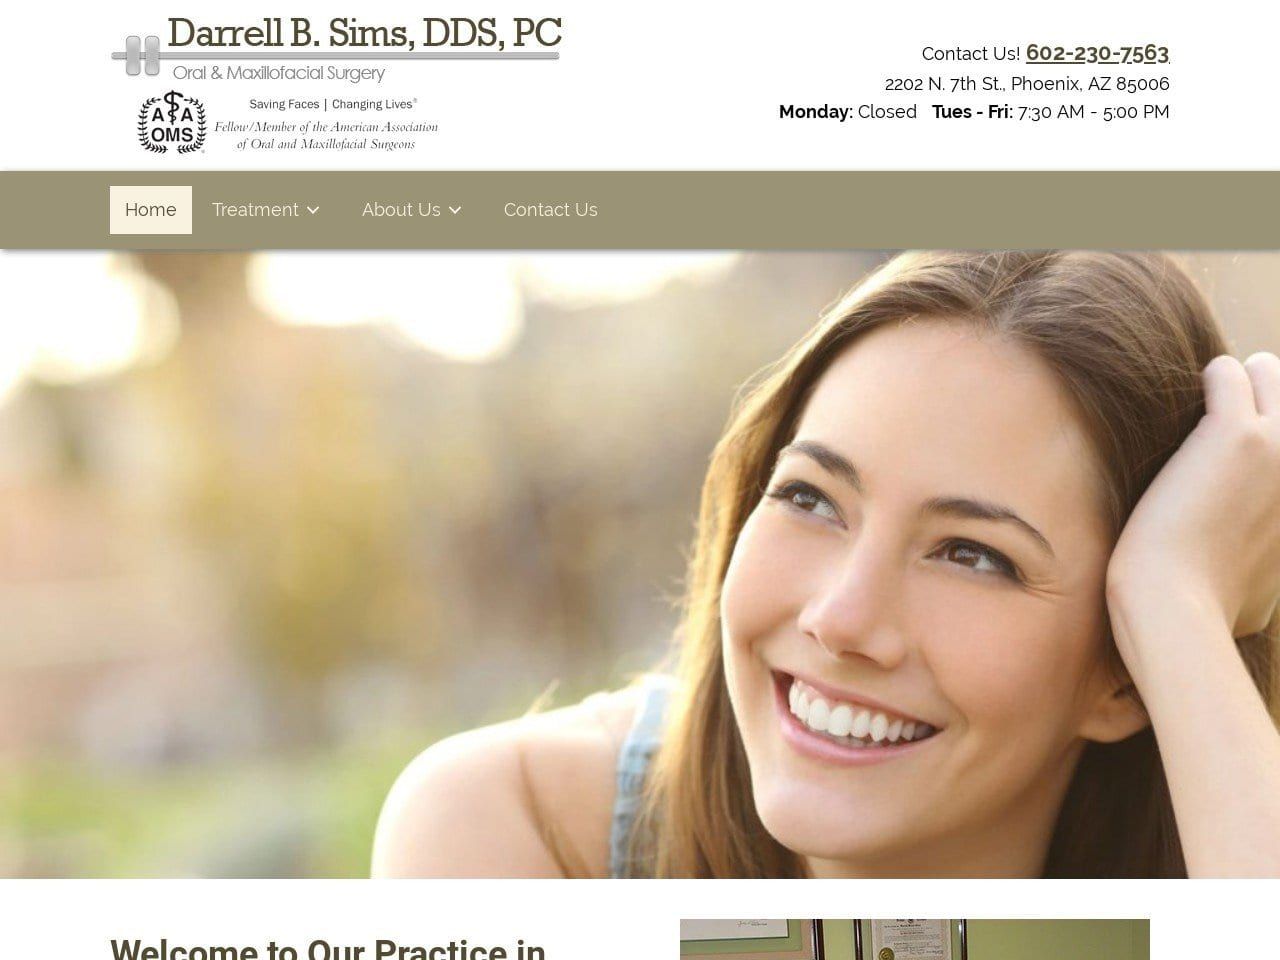 Dr. Darrell B. Sims DDS Website Screenshot from oralsurgeryaz.com